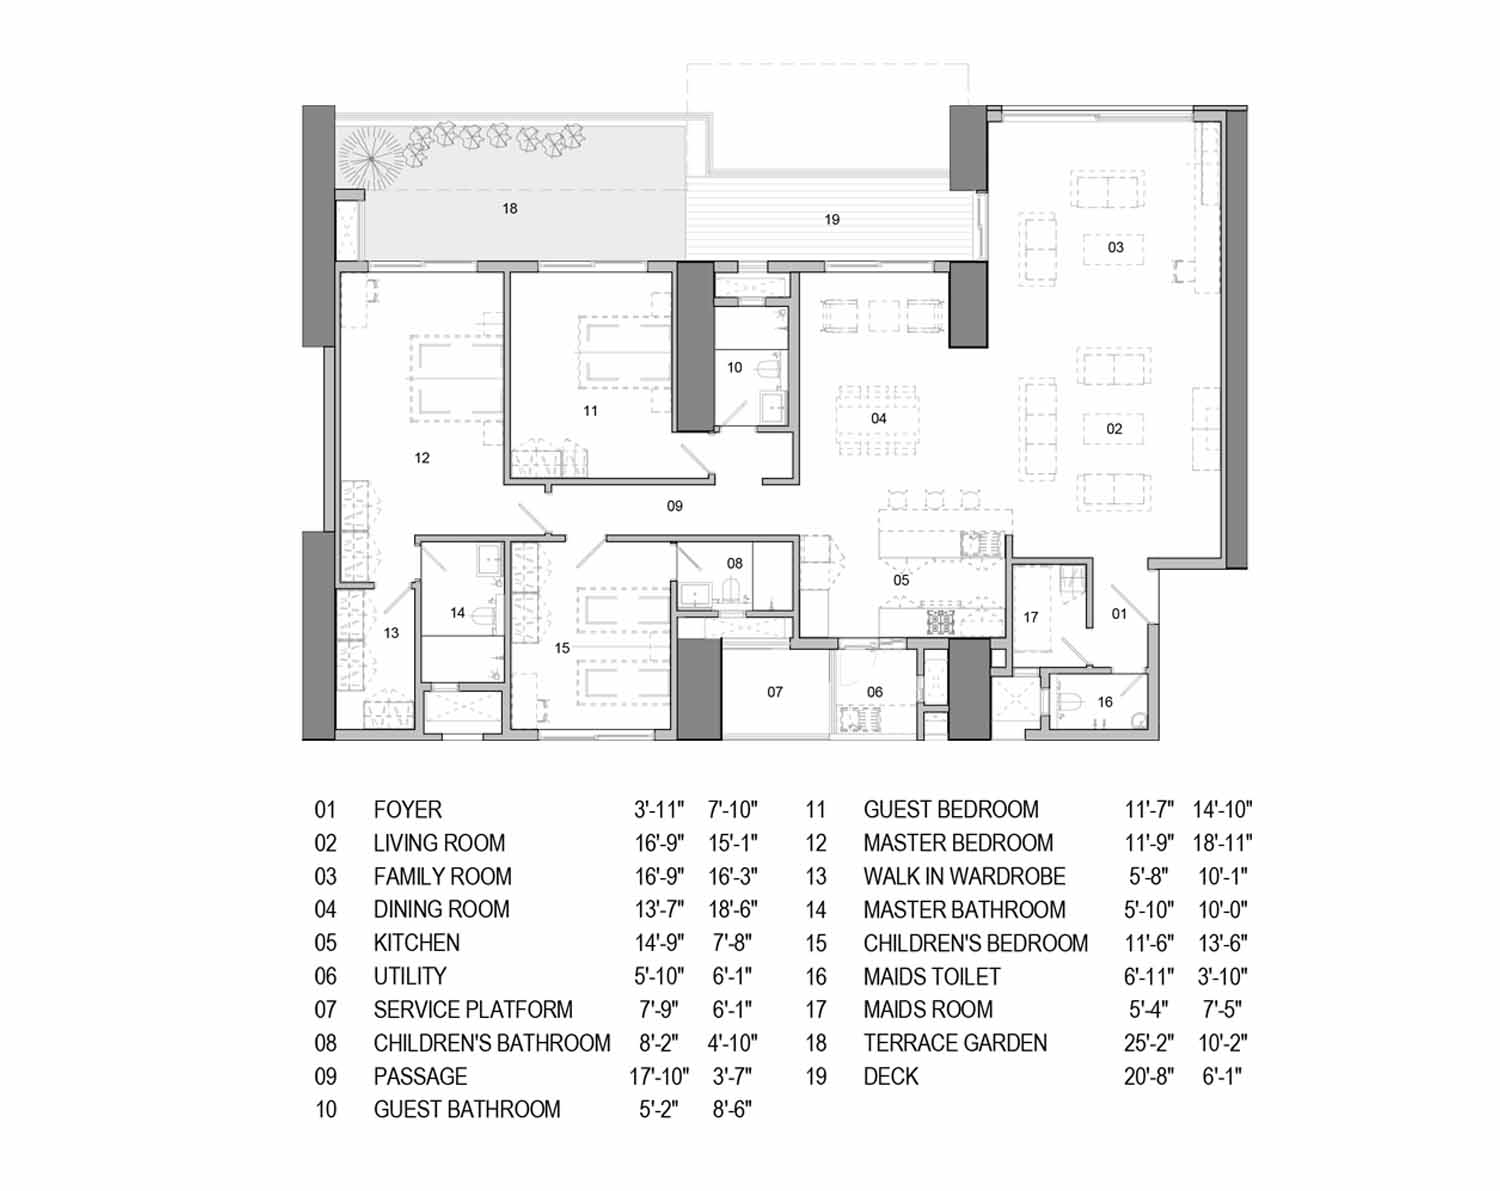 D35v3 -3-bedroom duplex homes - 4596 sq. ft.